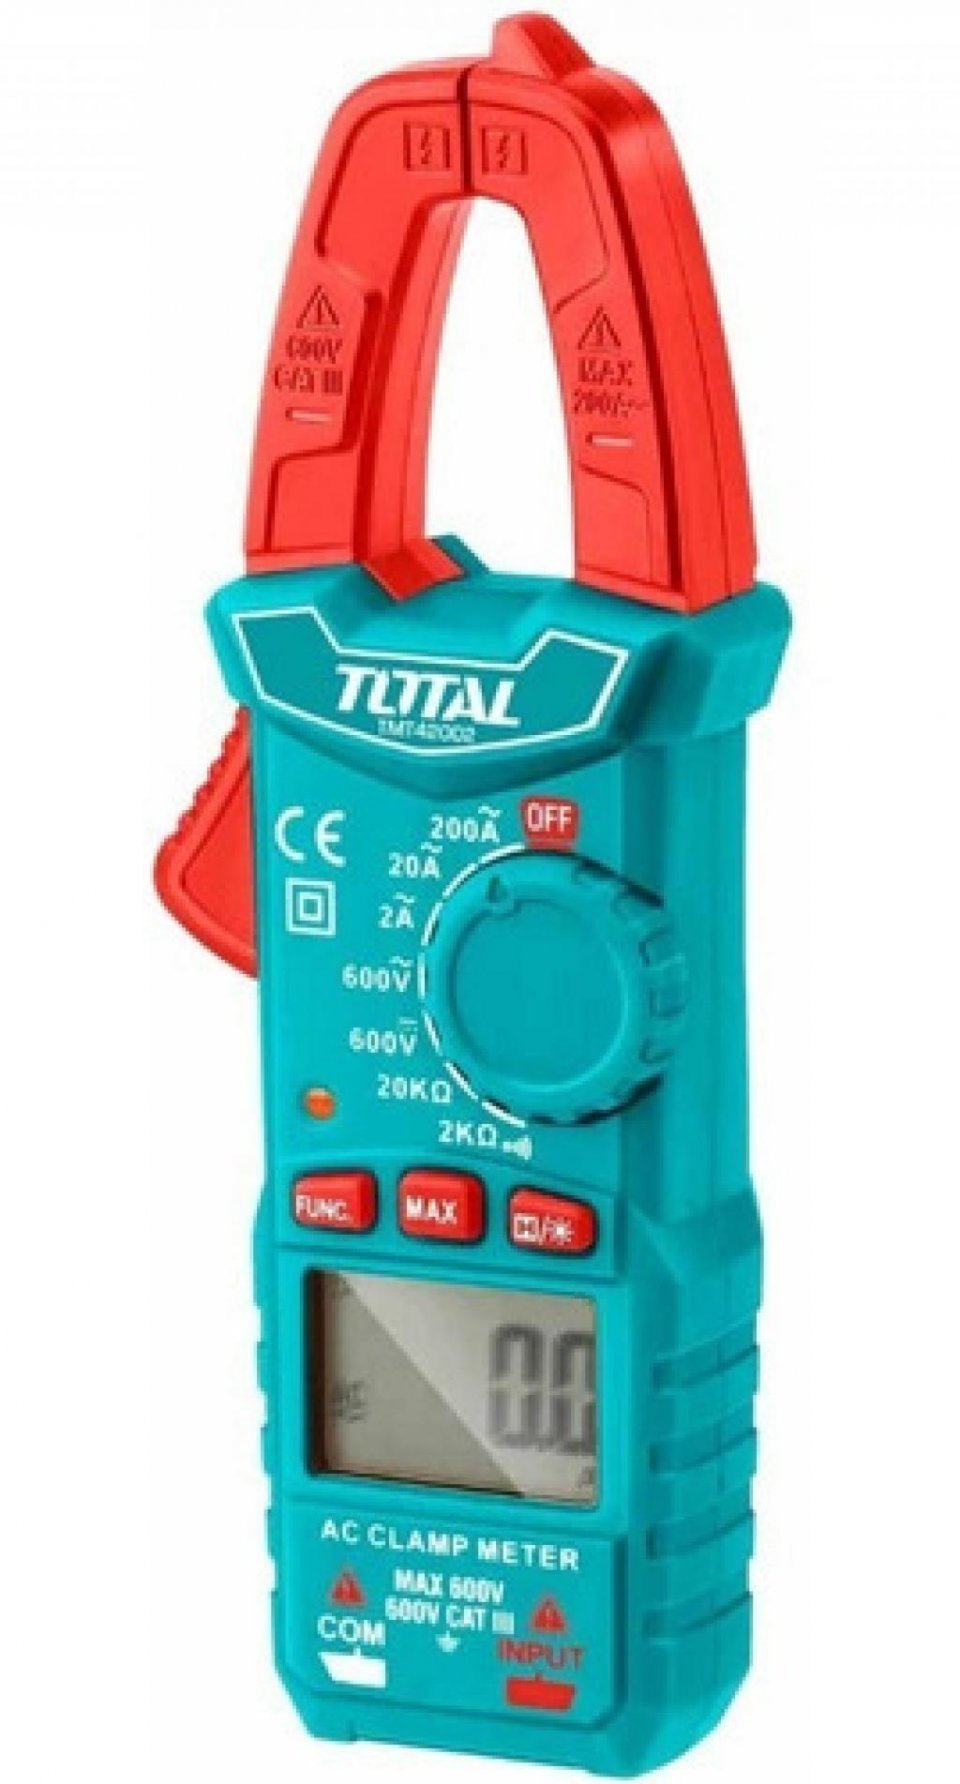 Hình ảnh 4 của mặt hàng Kềm đo AC kỹ thuật số total TMT42002